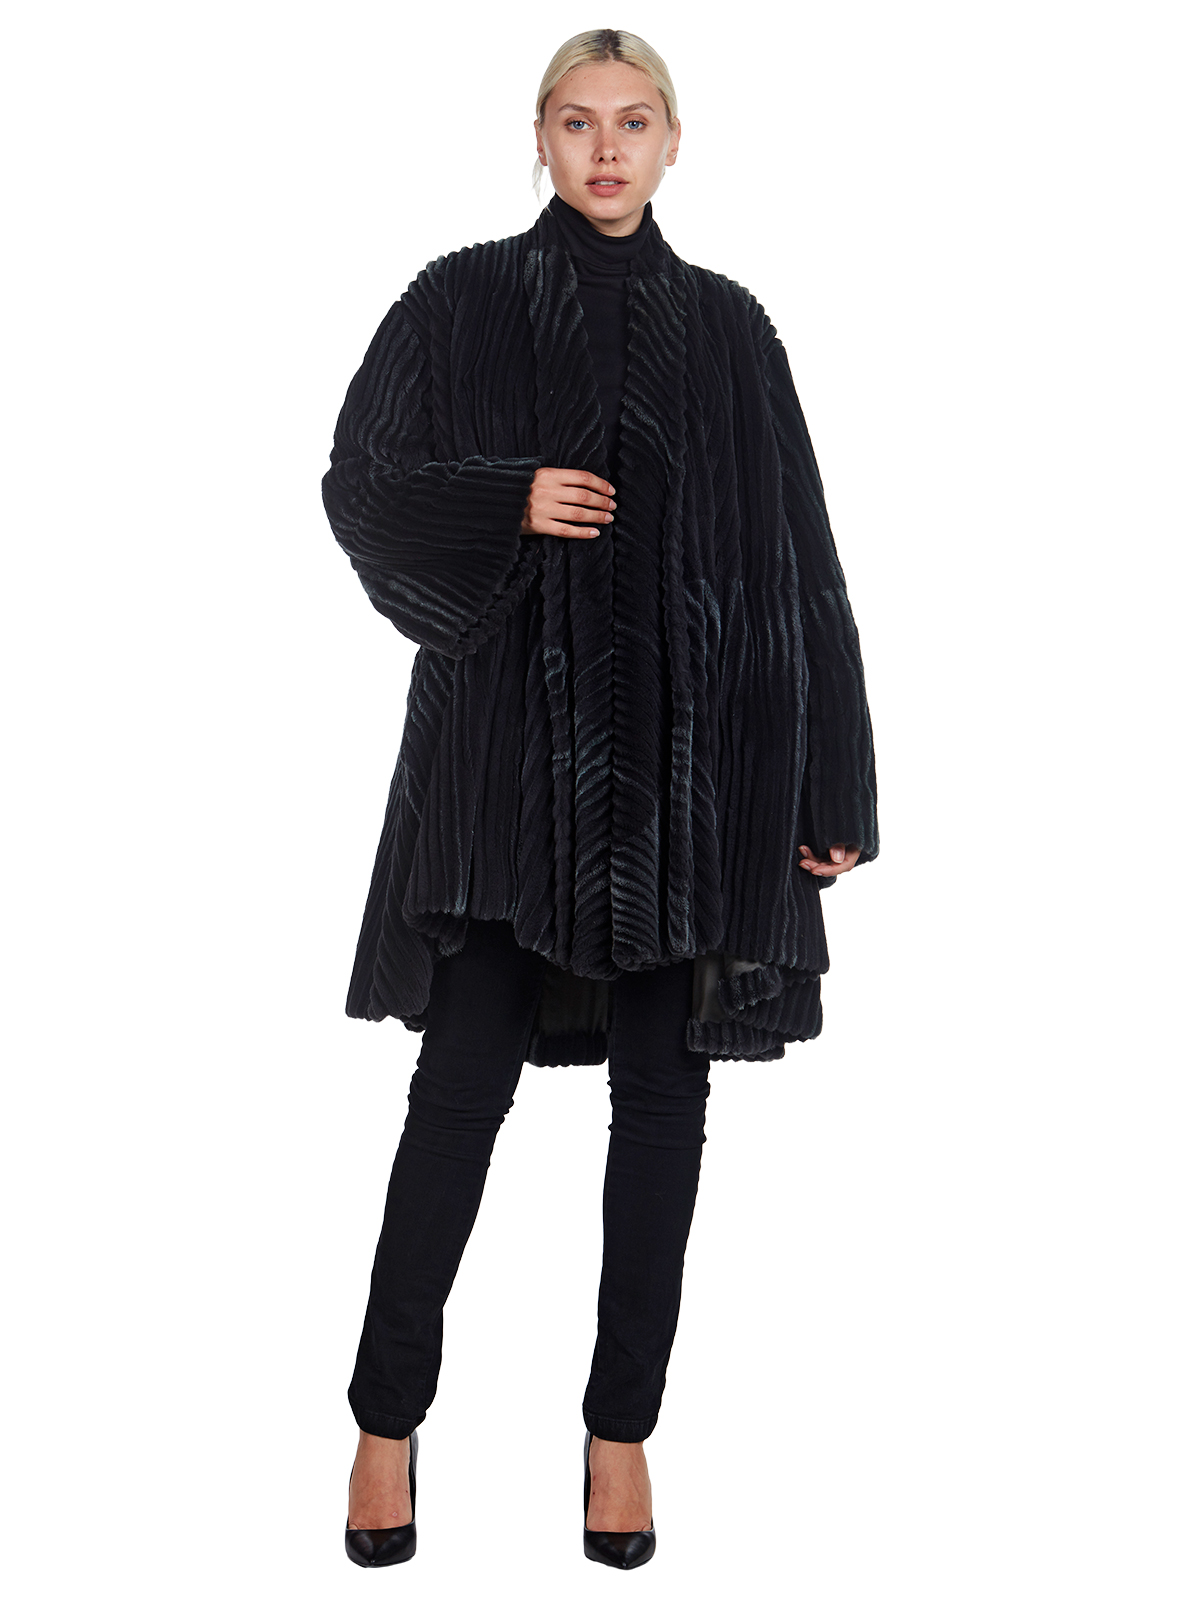 Donna Karan Dark Grey Sheared Mink Coat- Women's Mink Coat - XL| Estate ...